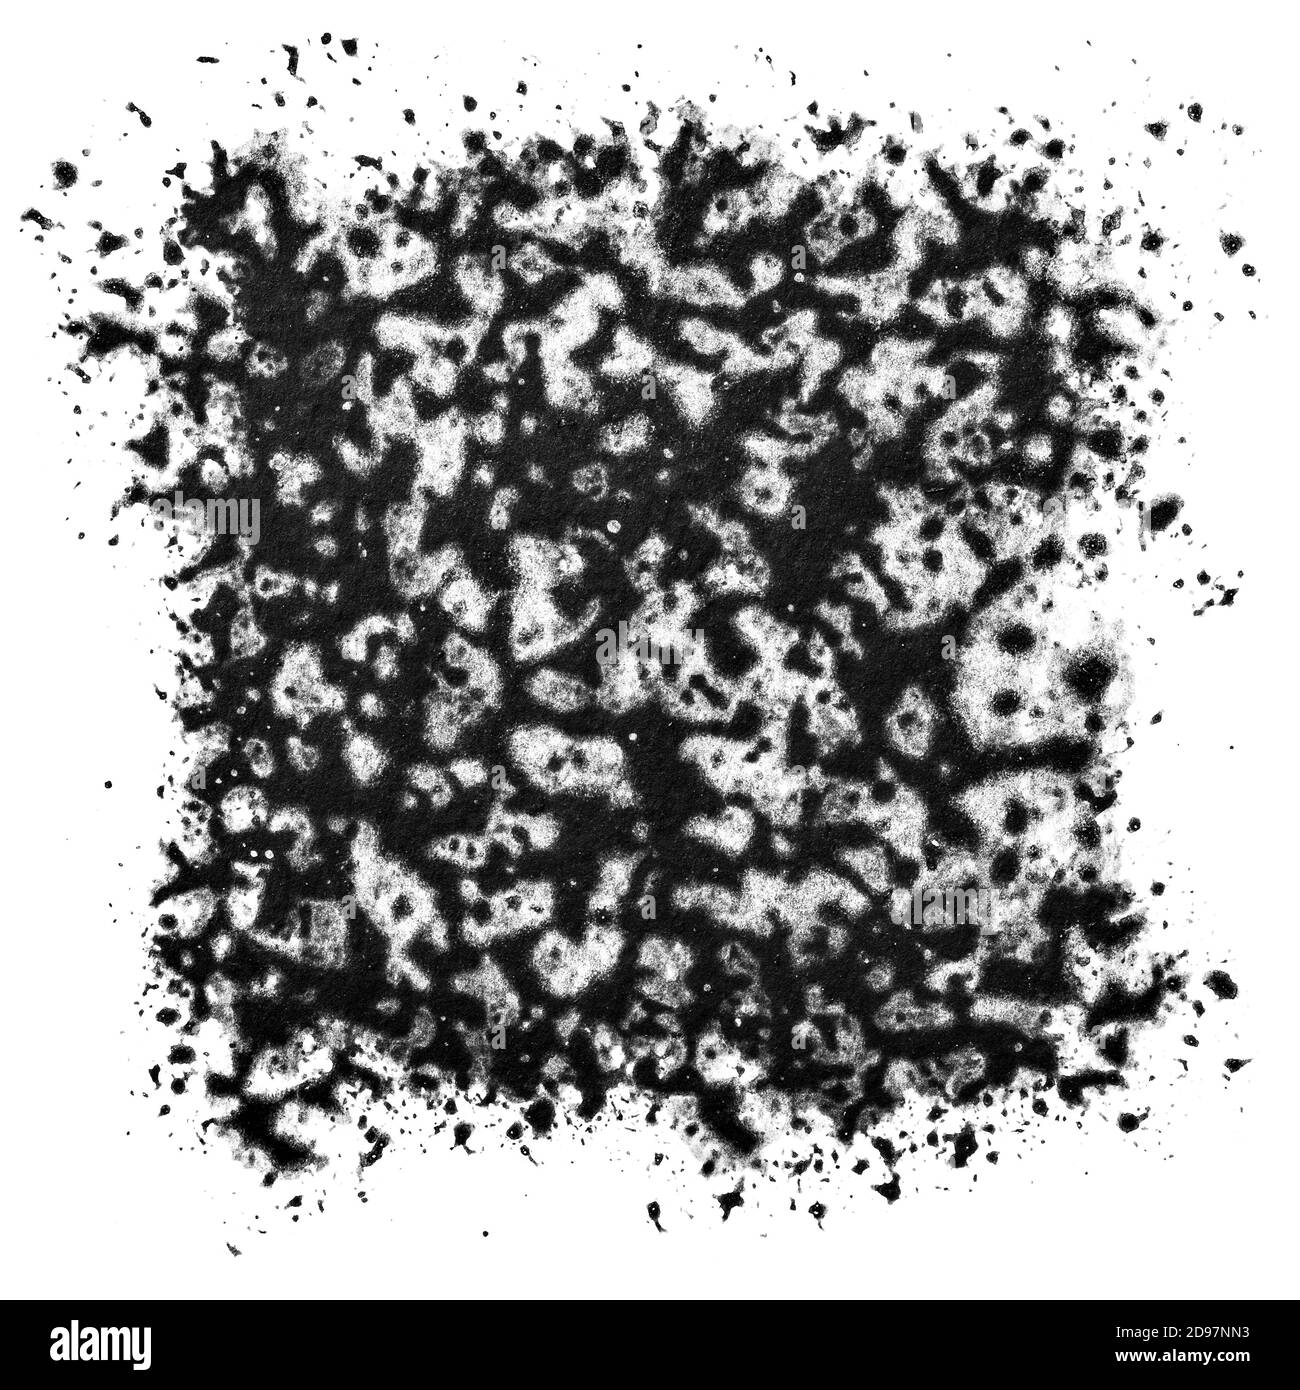 Quadratische grau-schwarze Färbung mit Spritzern und Flecken isoliert auf Der weiße Hintergrund Stockfoto